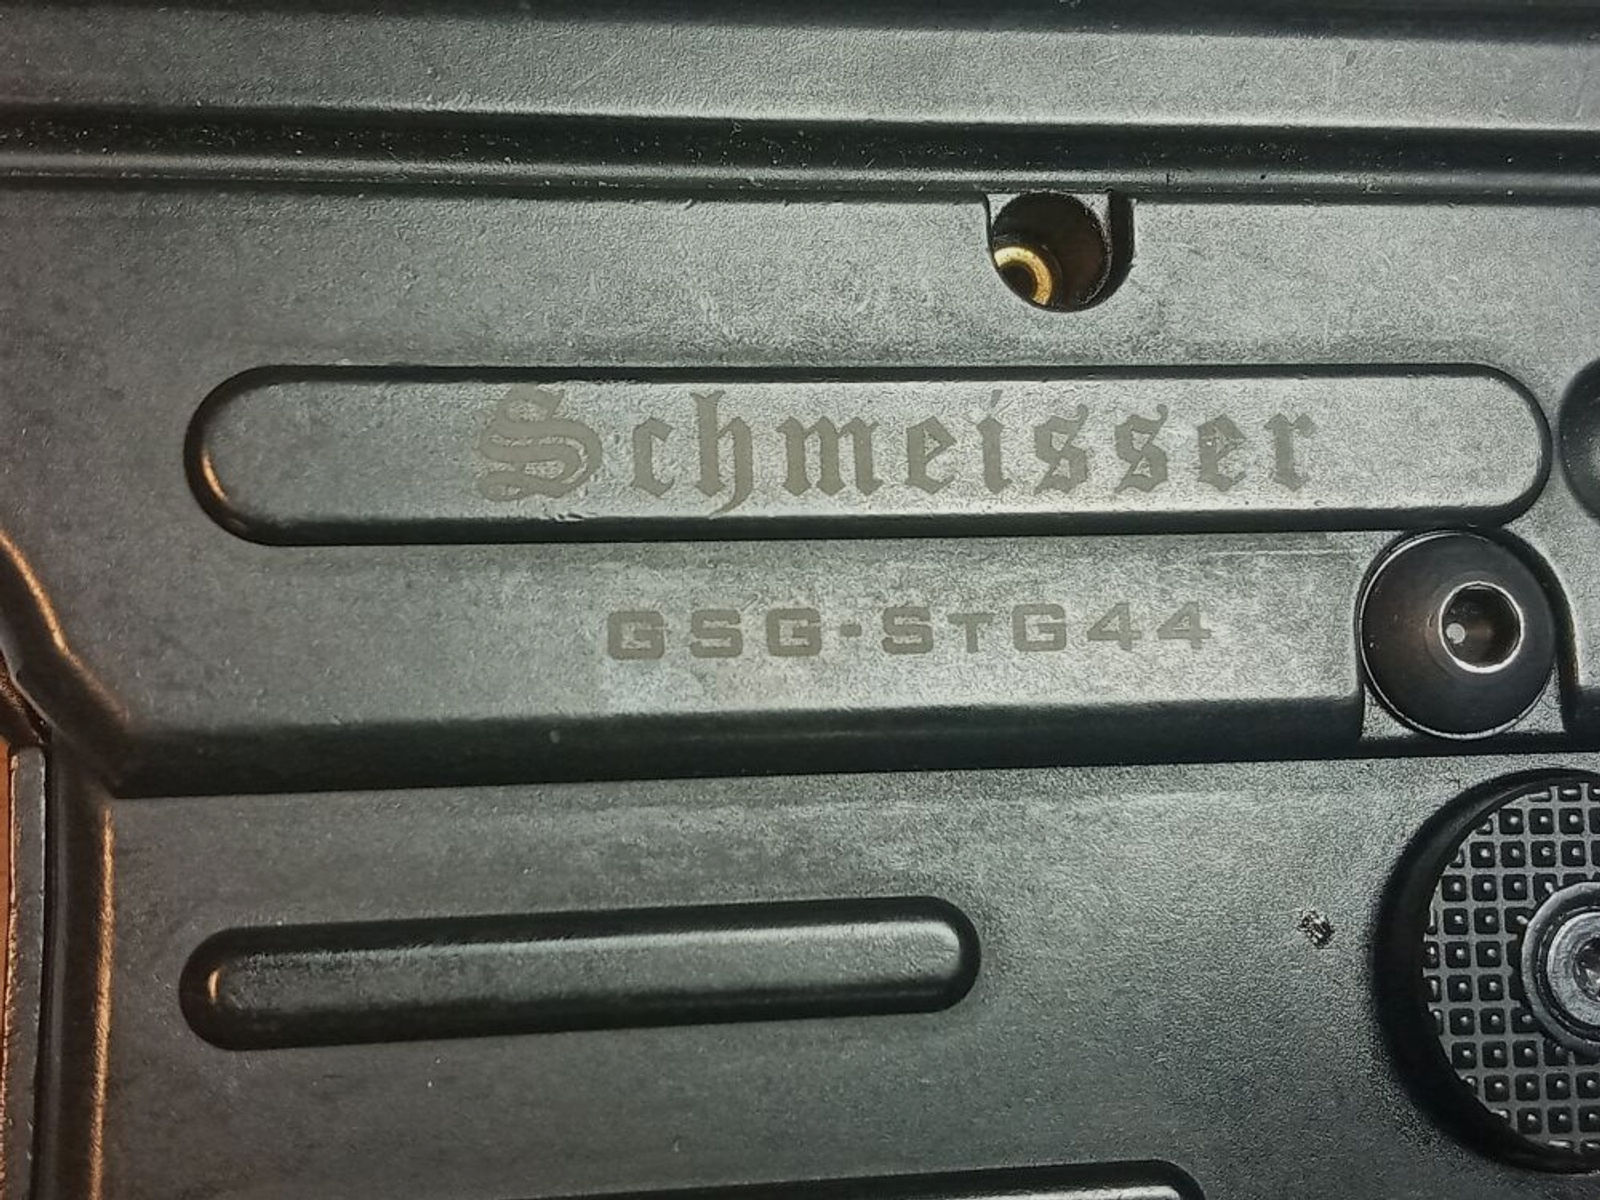 GSG - Schmeisser	 Stgw 44